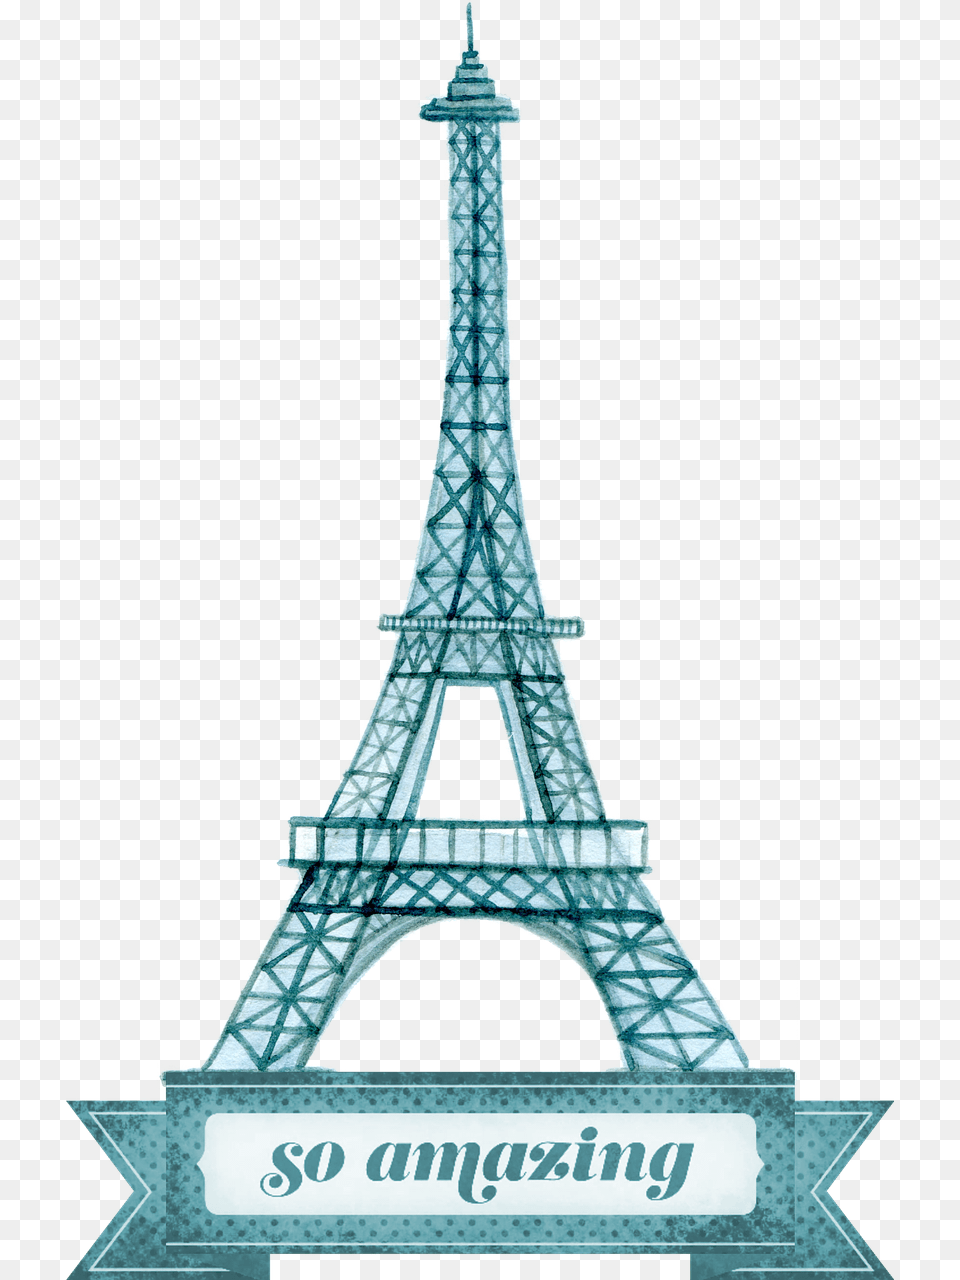 Icono De La Torre Eiffel, Architecture, Building, Tower, City Free Png